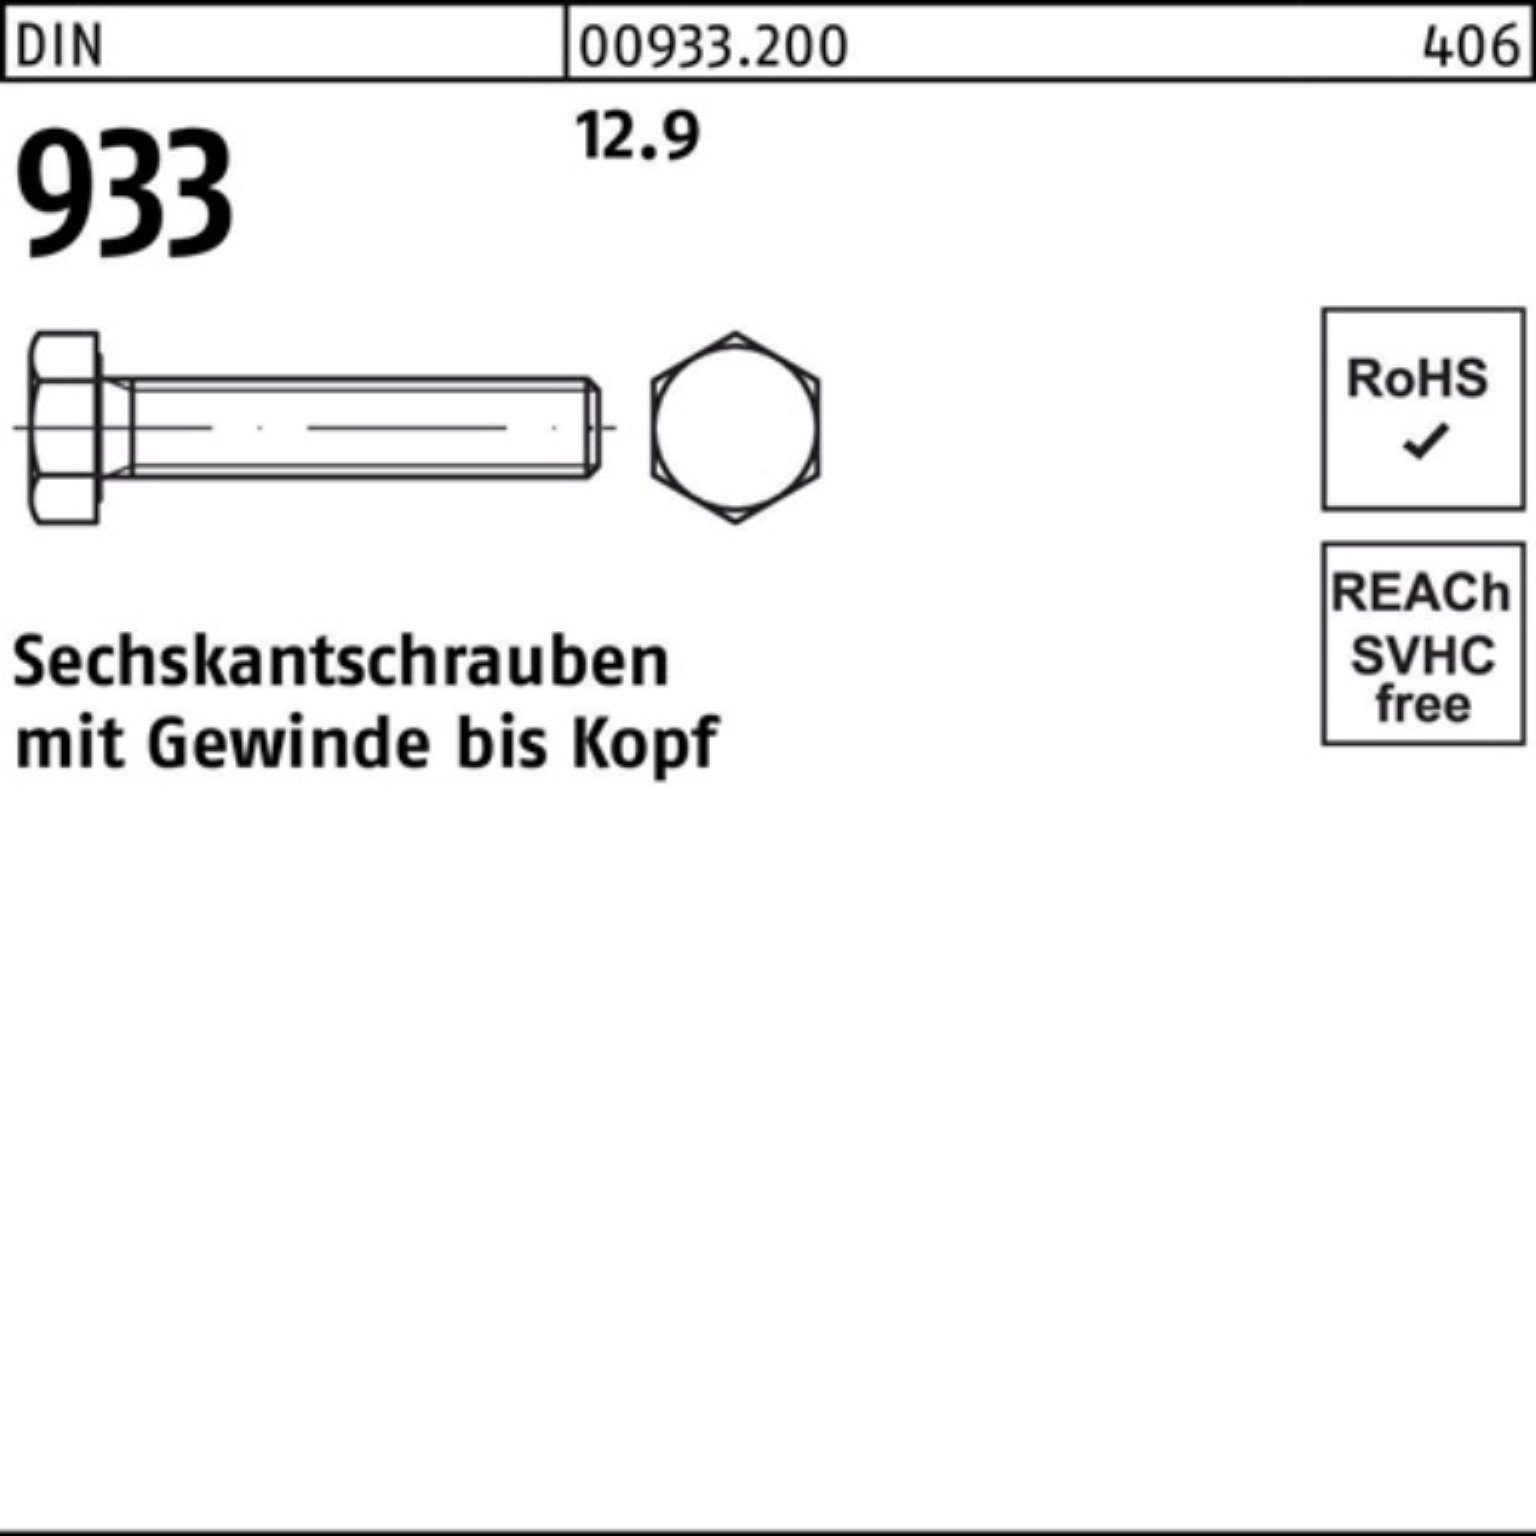 933 Sechskantschraube Reyher Pack 12.9 VG 100er DIN Sechskantschraube M24x DIN 100 Stück 93 10